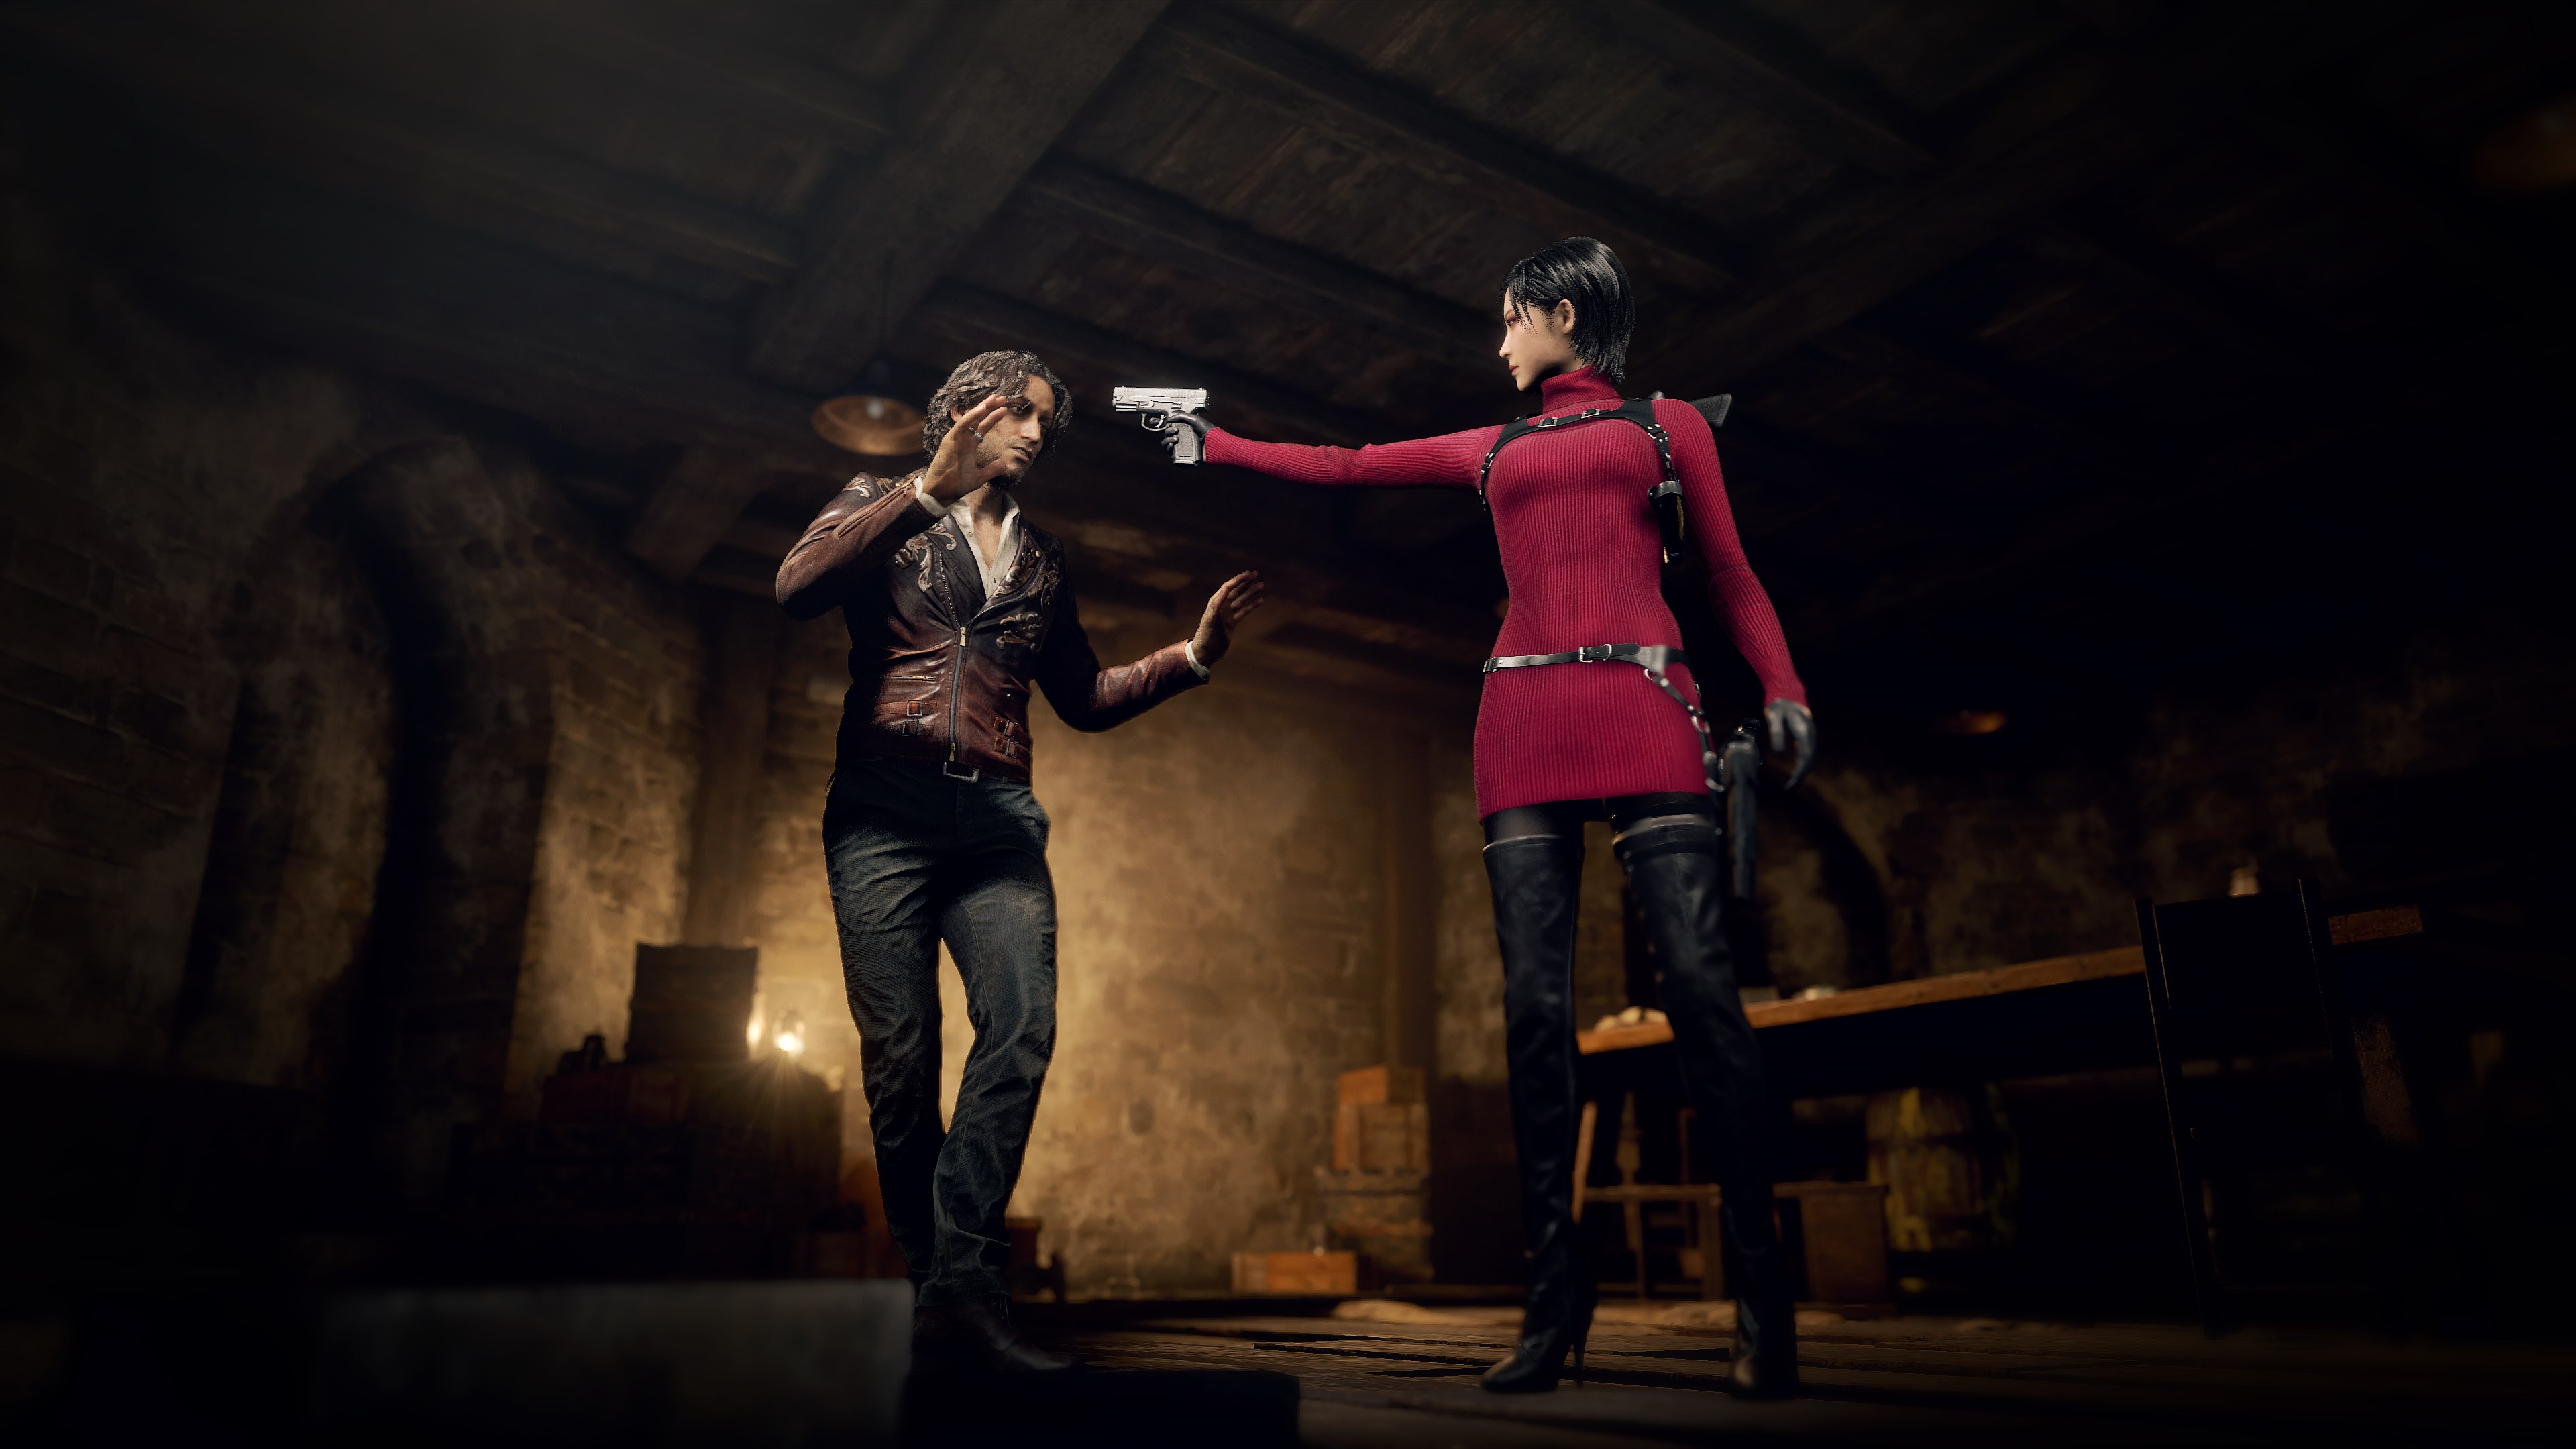 Resident Evil 4 Remake tem novo trailer e demo anunciada - Outer Space